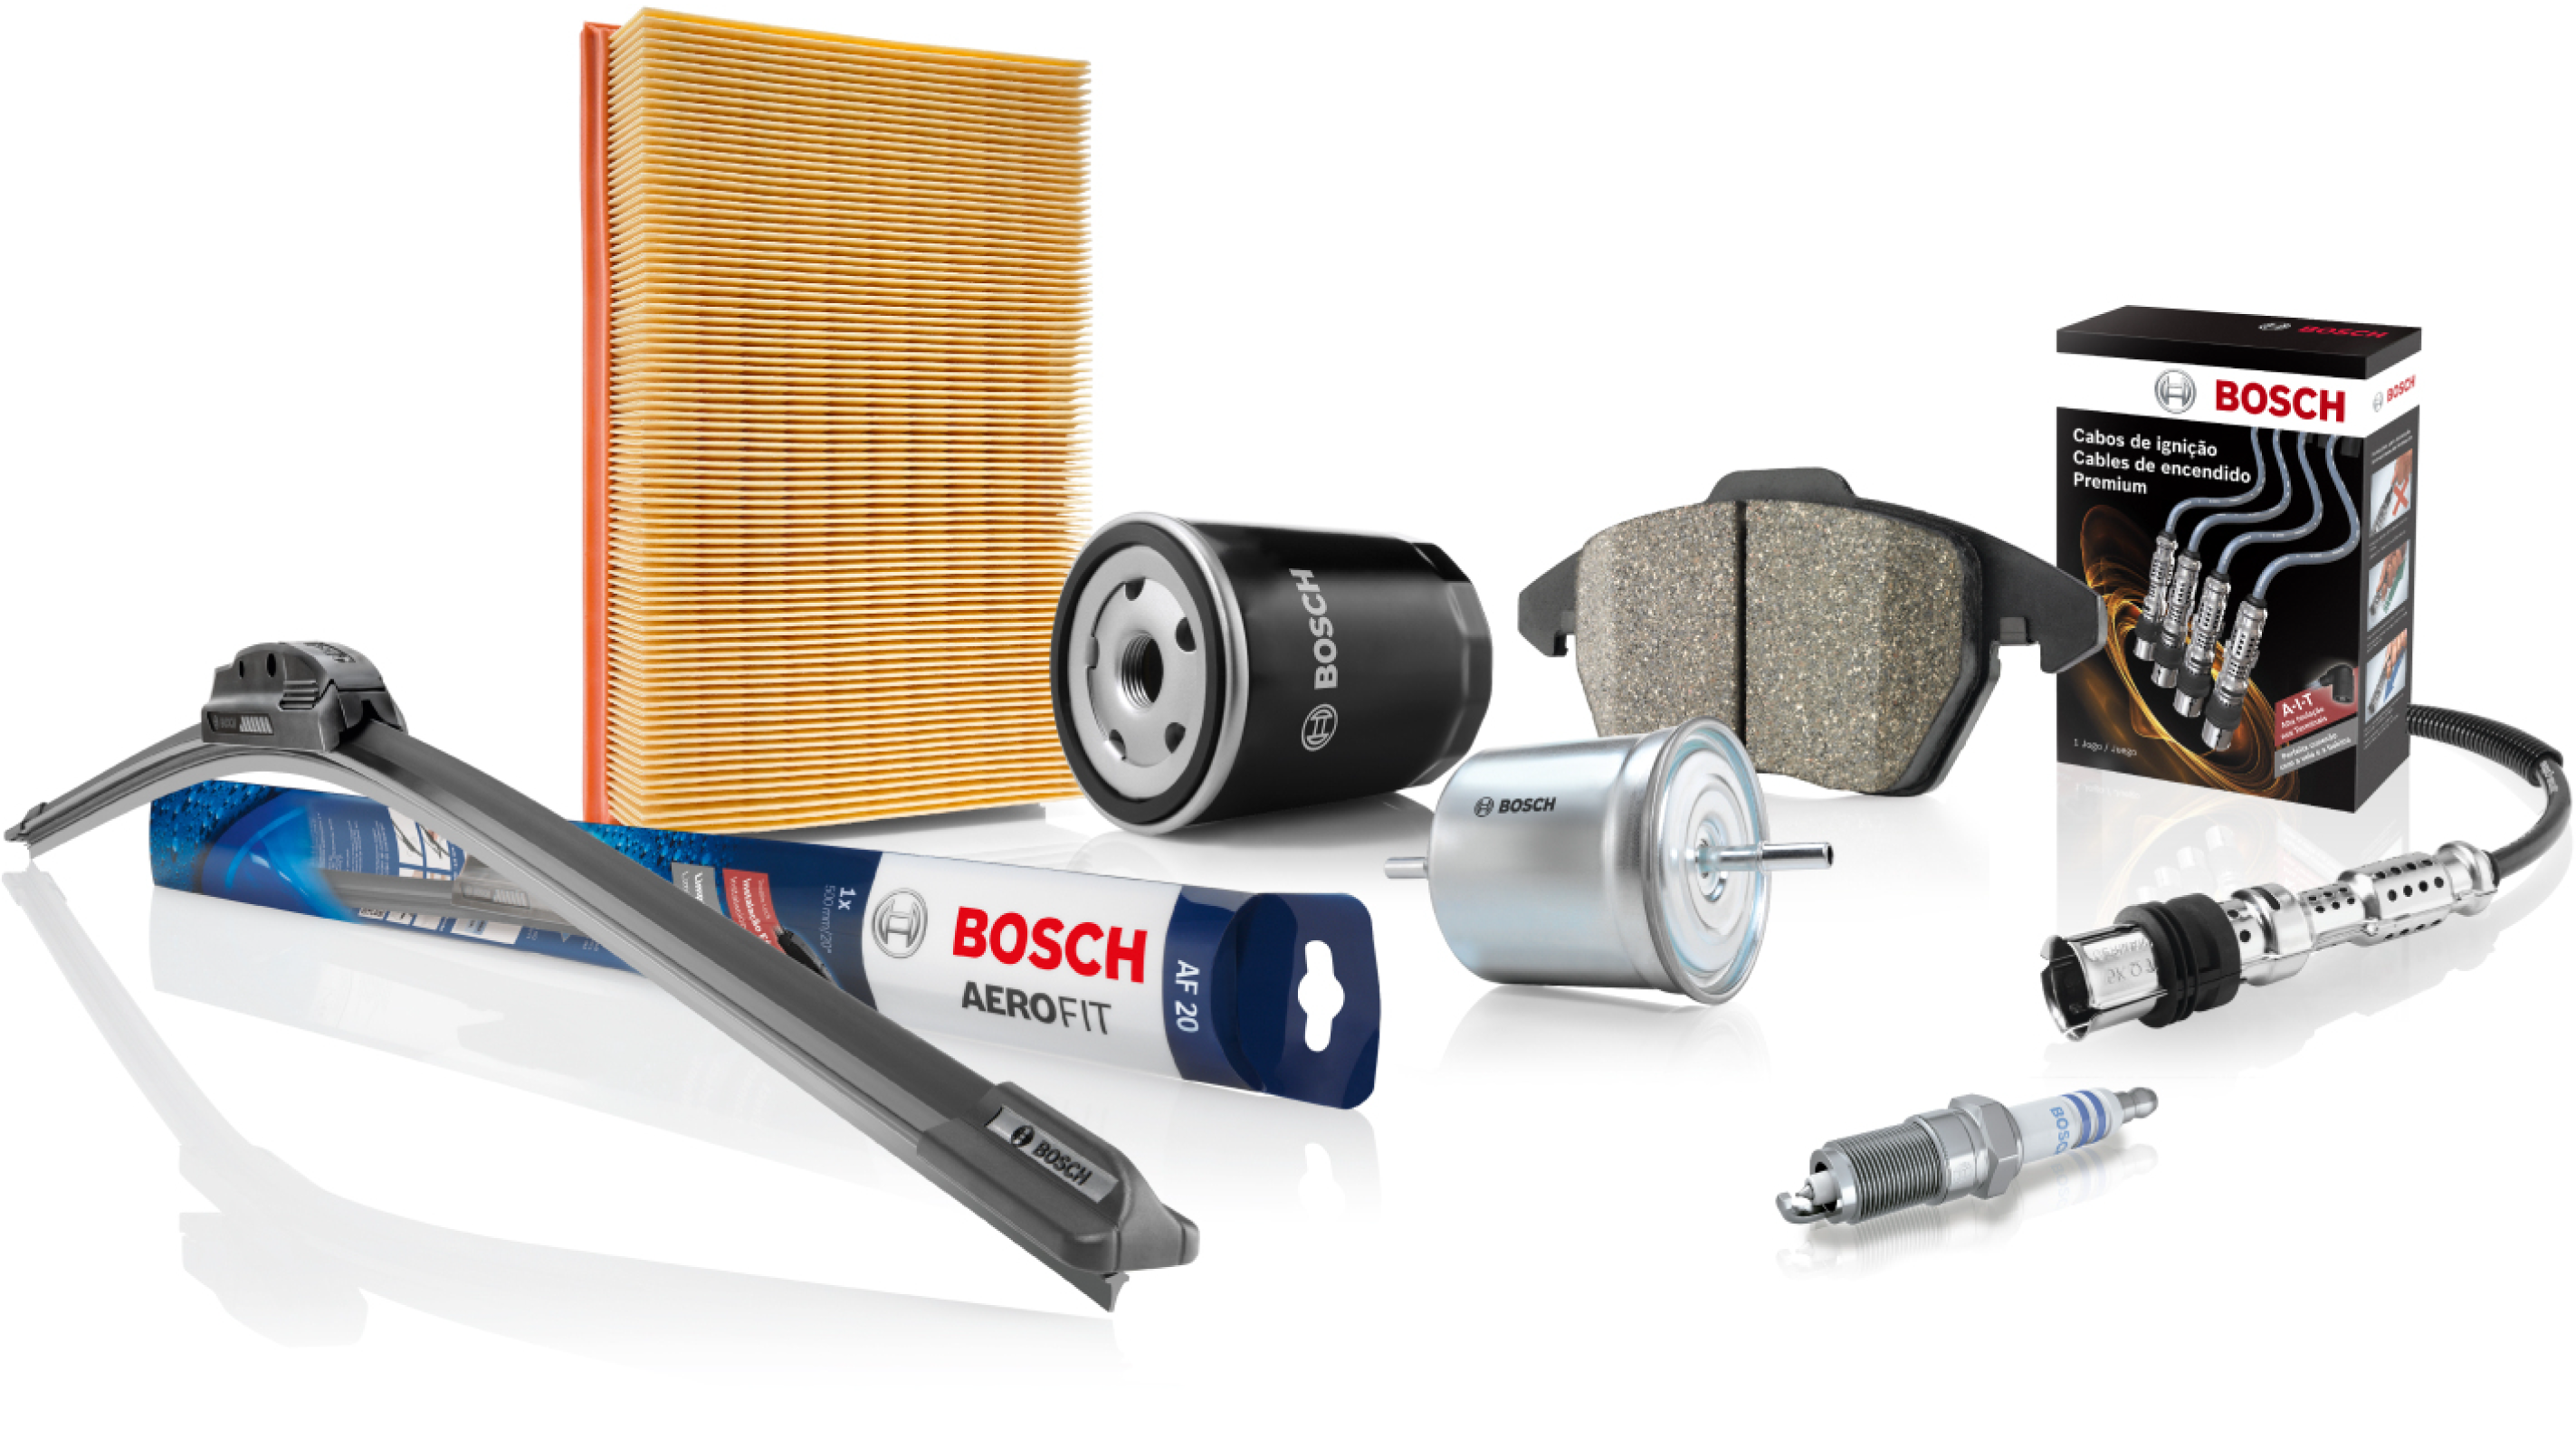 A Bosch está concorrendo ao Prêmio Reclame Aqui na categoria “Ferramentas e Máquinas” 